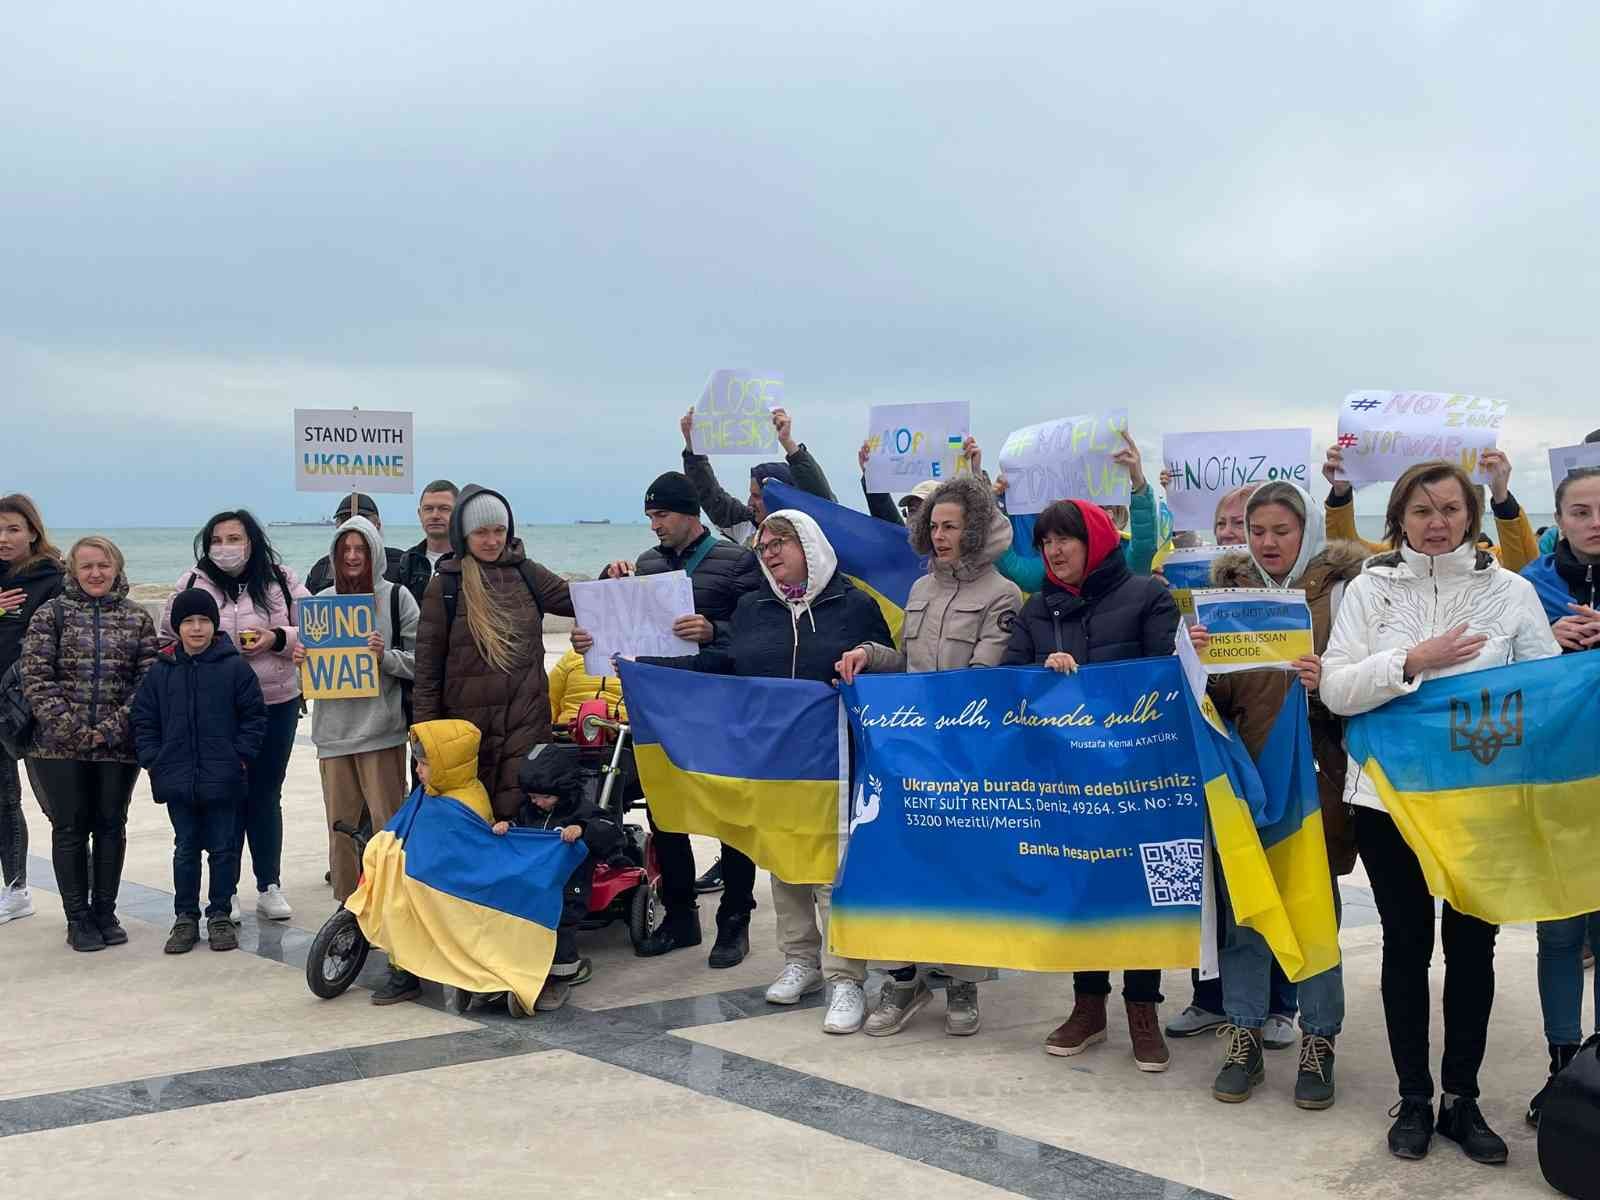 mersindeki ukraynalilar rusyanin saldirisini protesto etti 633c579